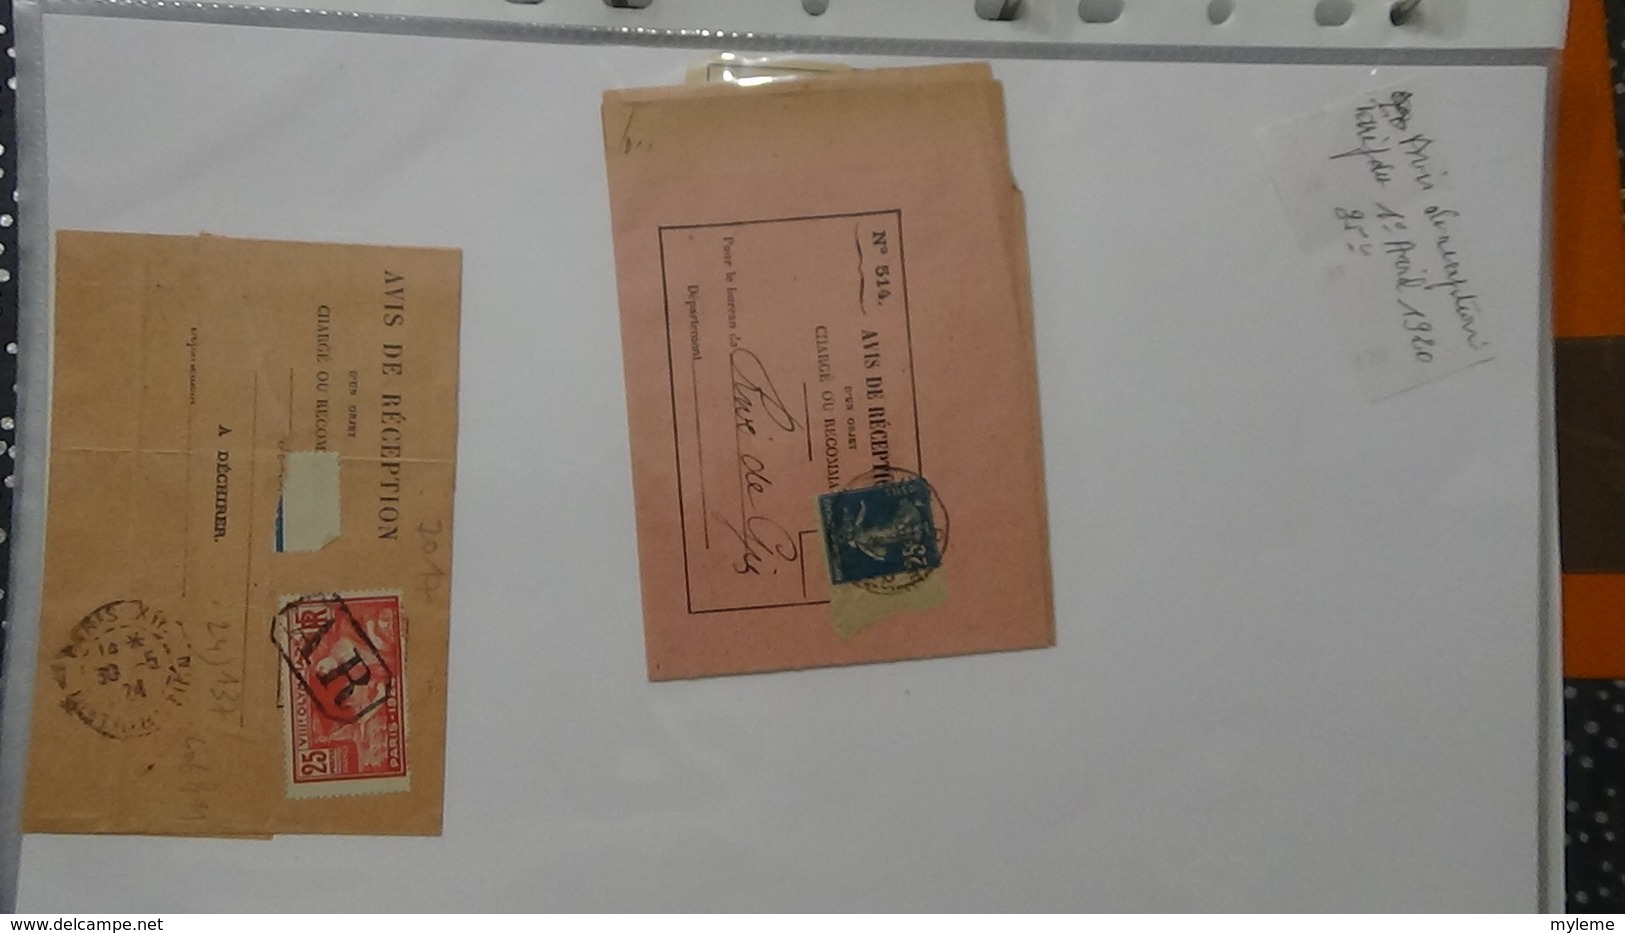 B183 Belle étude sur l'évolution du prix du timbre sur fragments et courriers. Sympa !!!